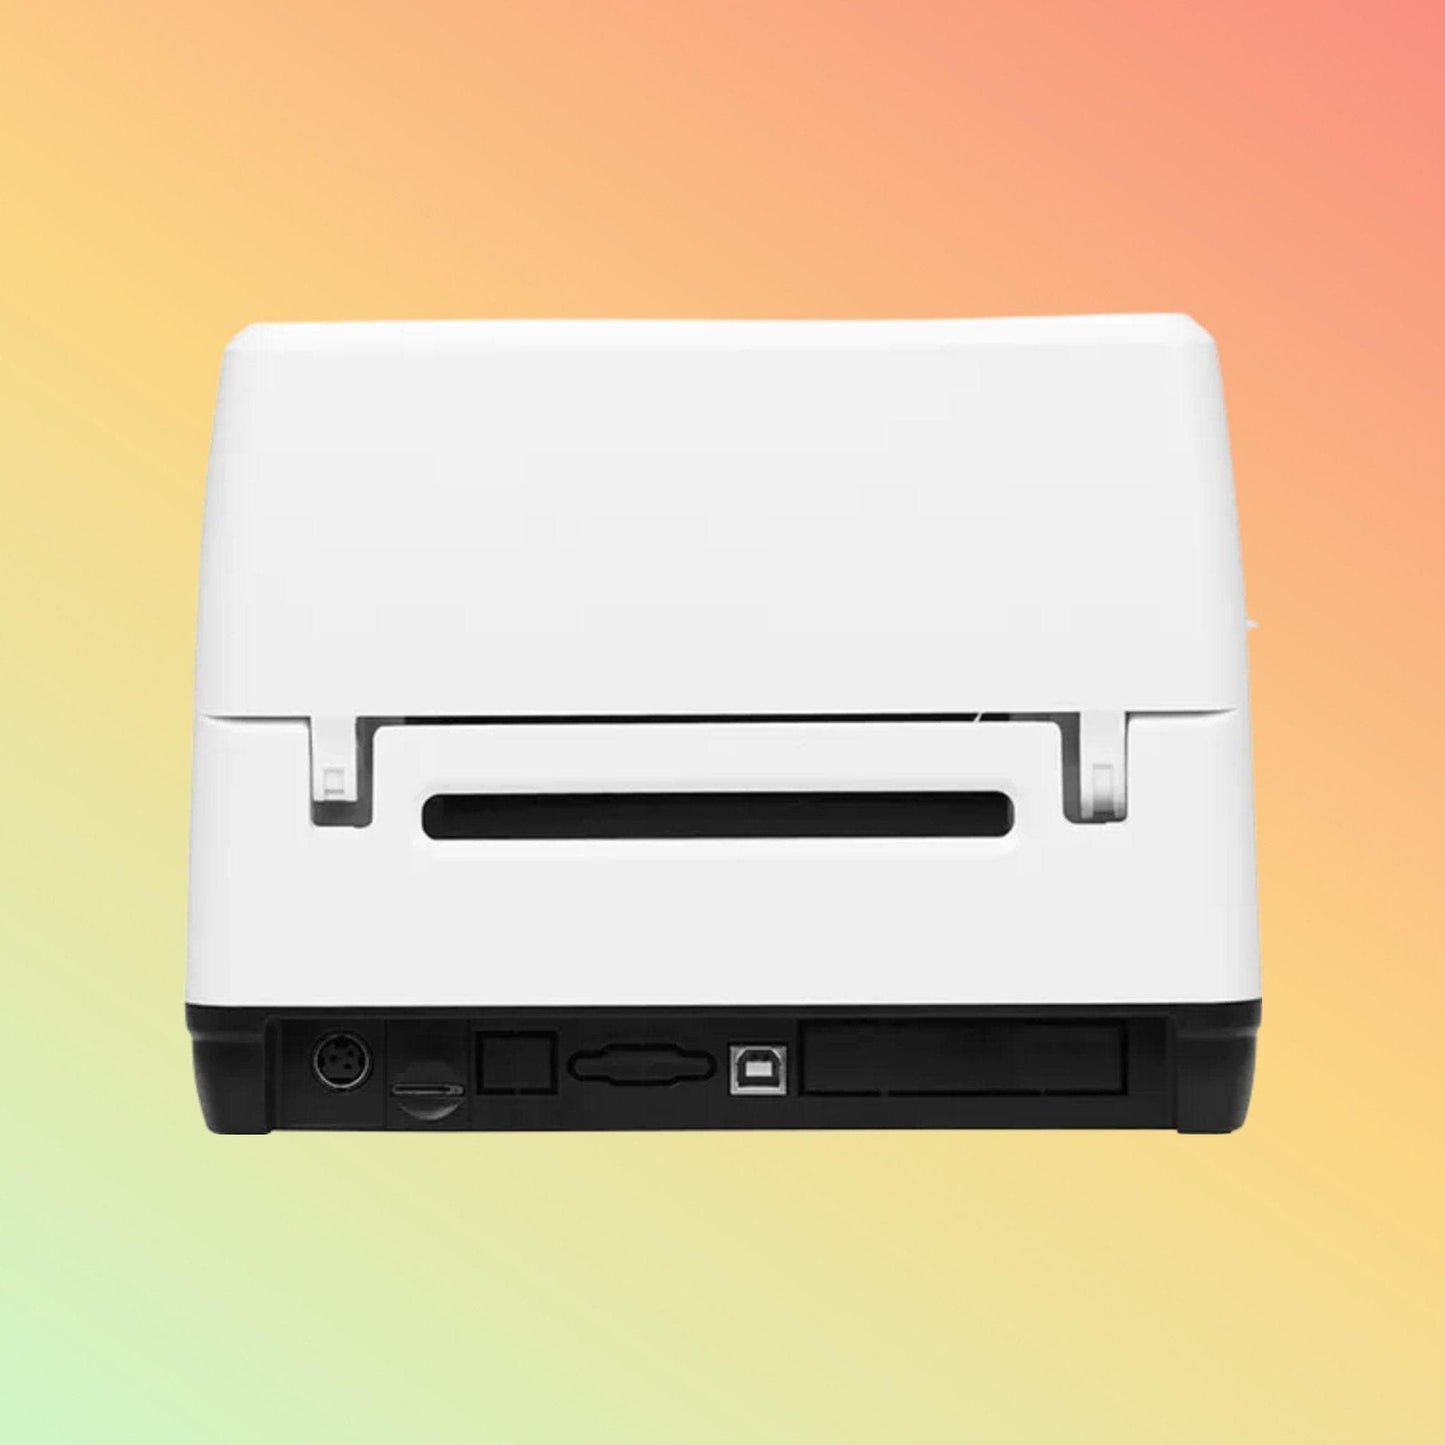 Label Printer - Xprinter XP-T453E - Neotech